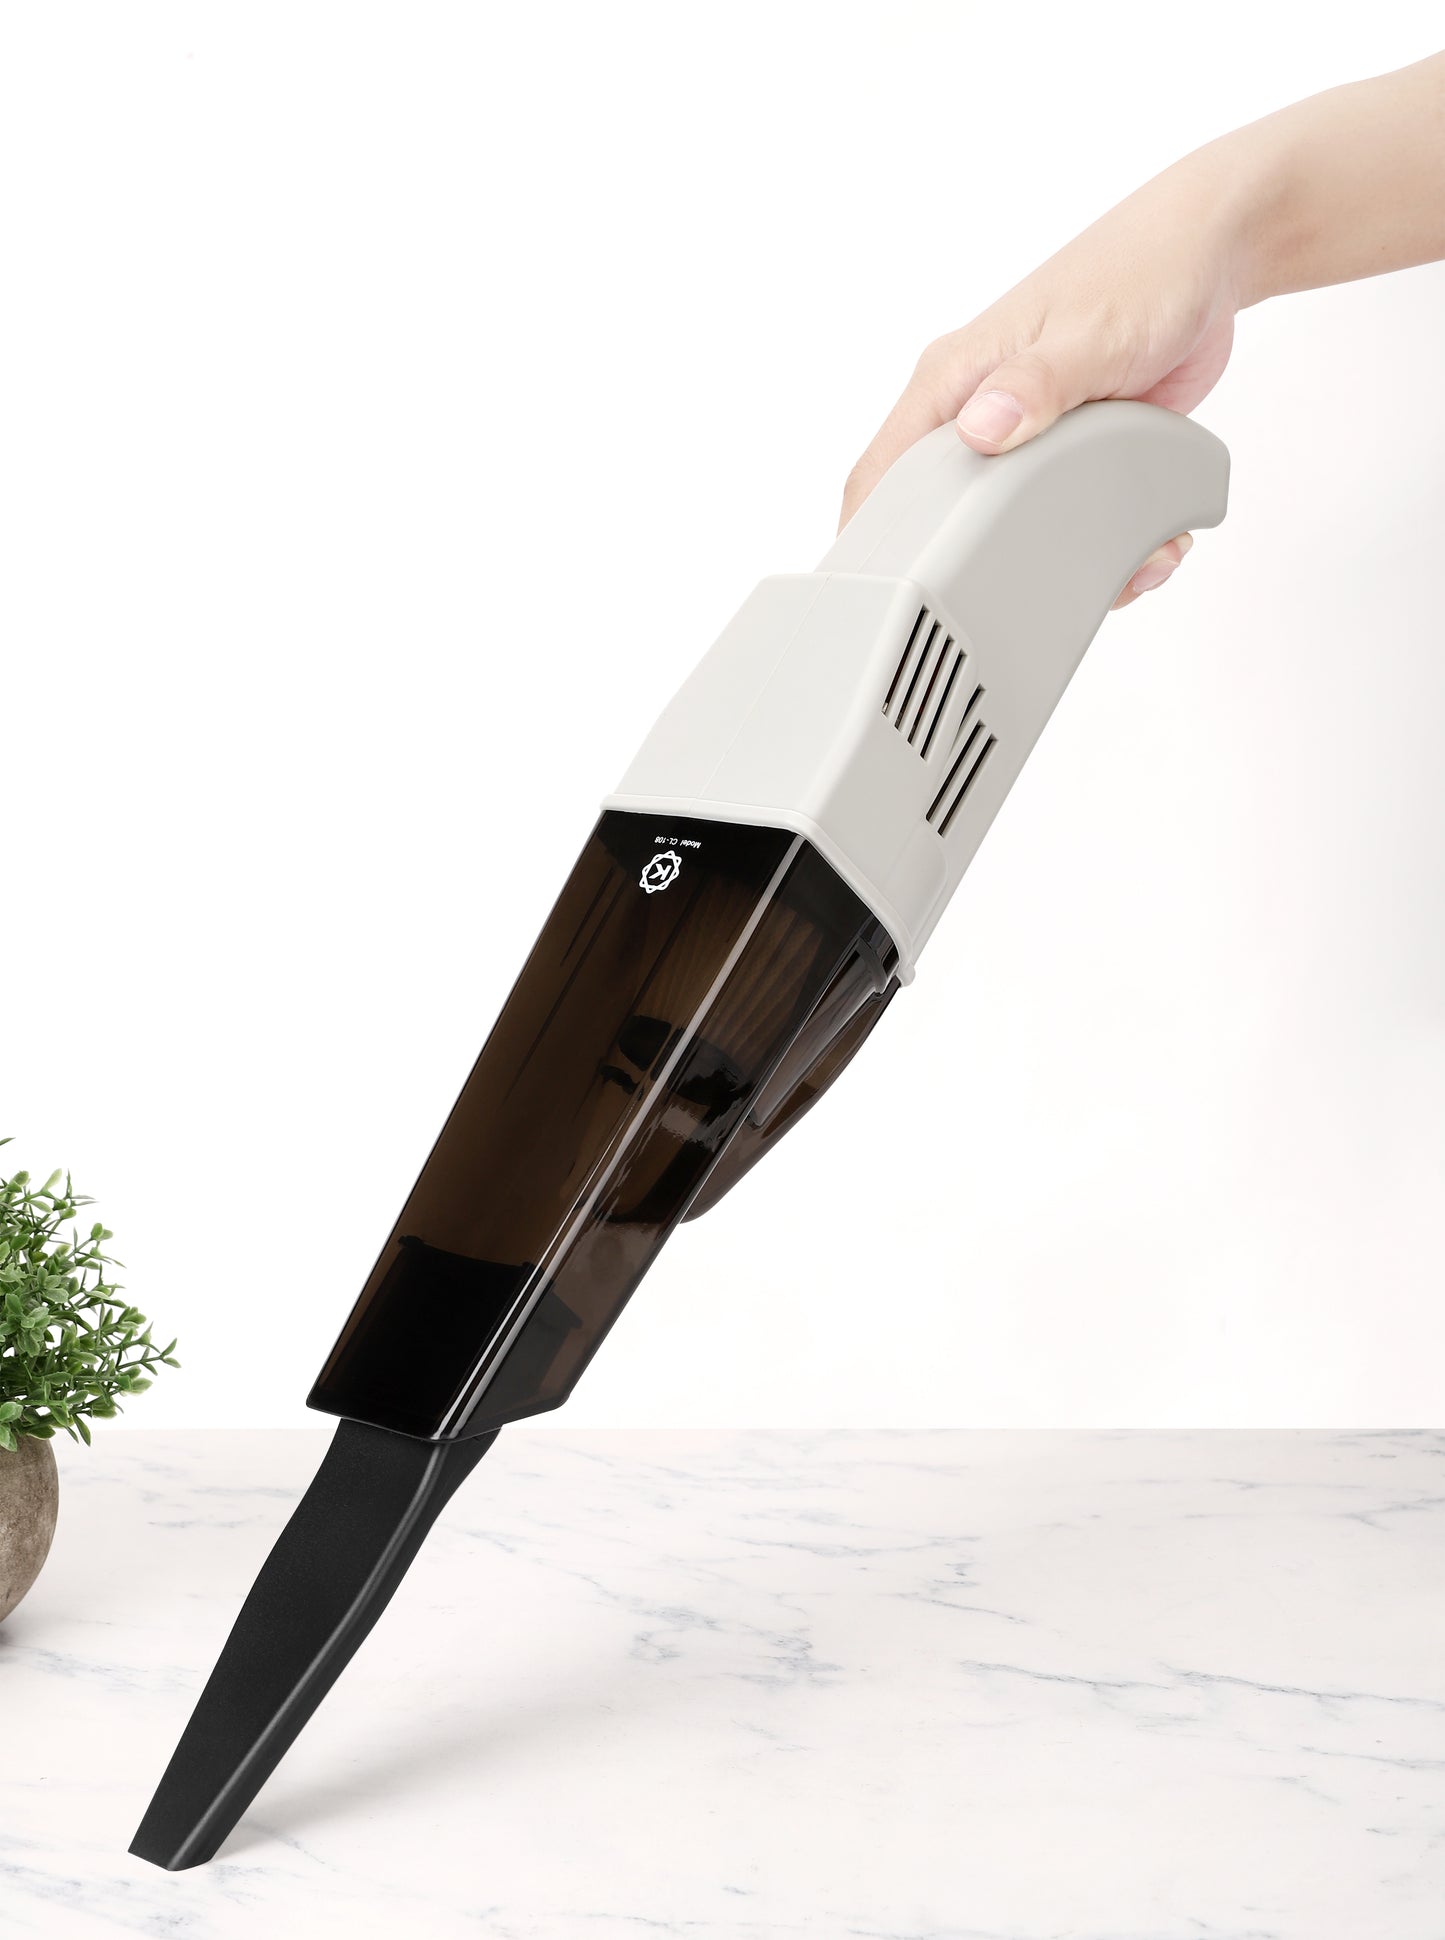 Kobot Portable Cordless Handheld Vacuum